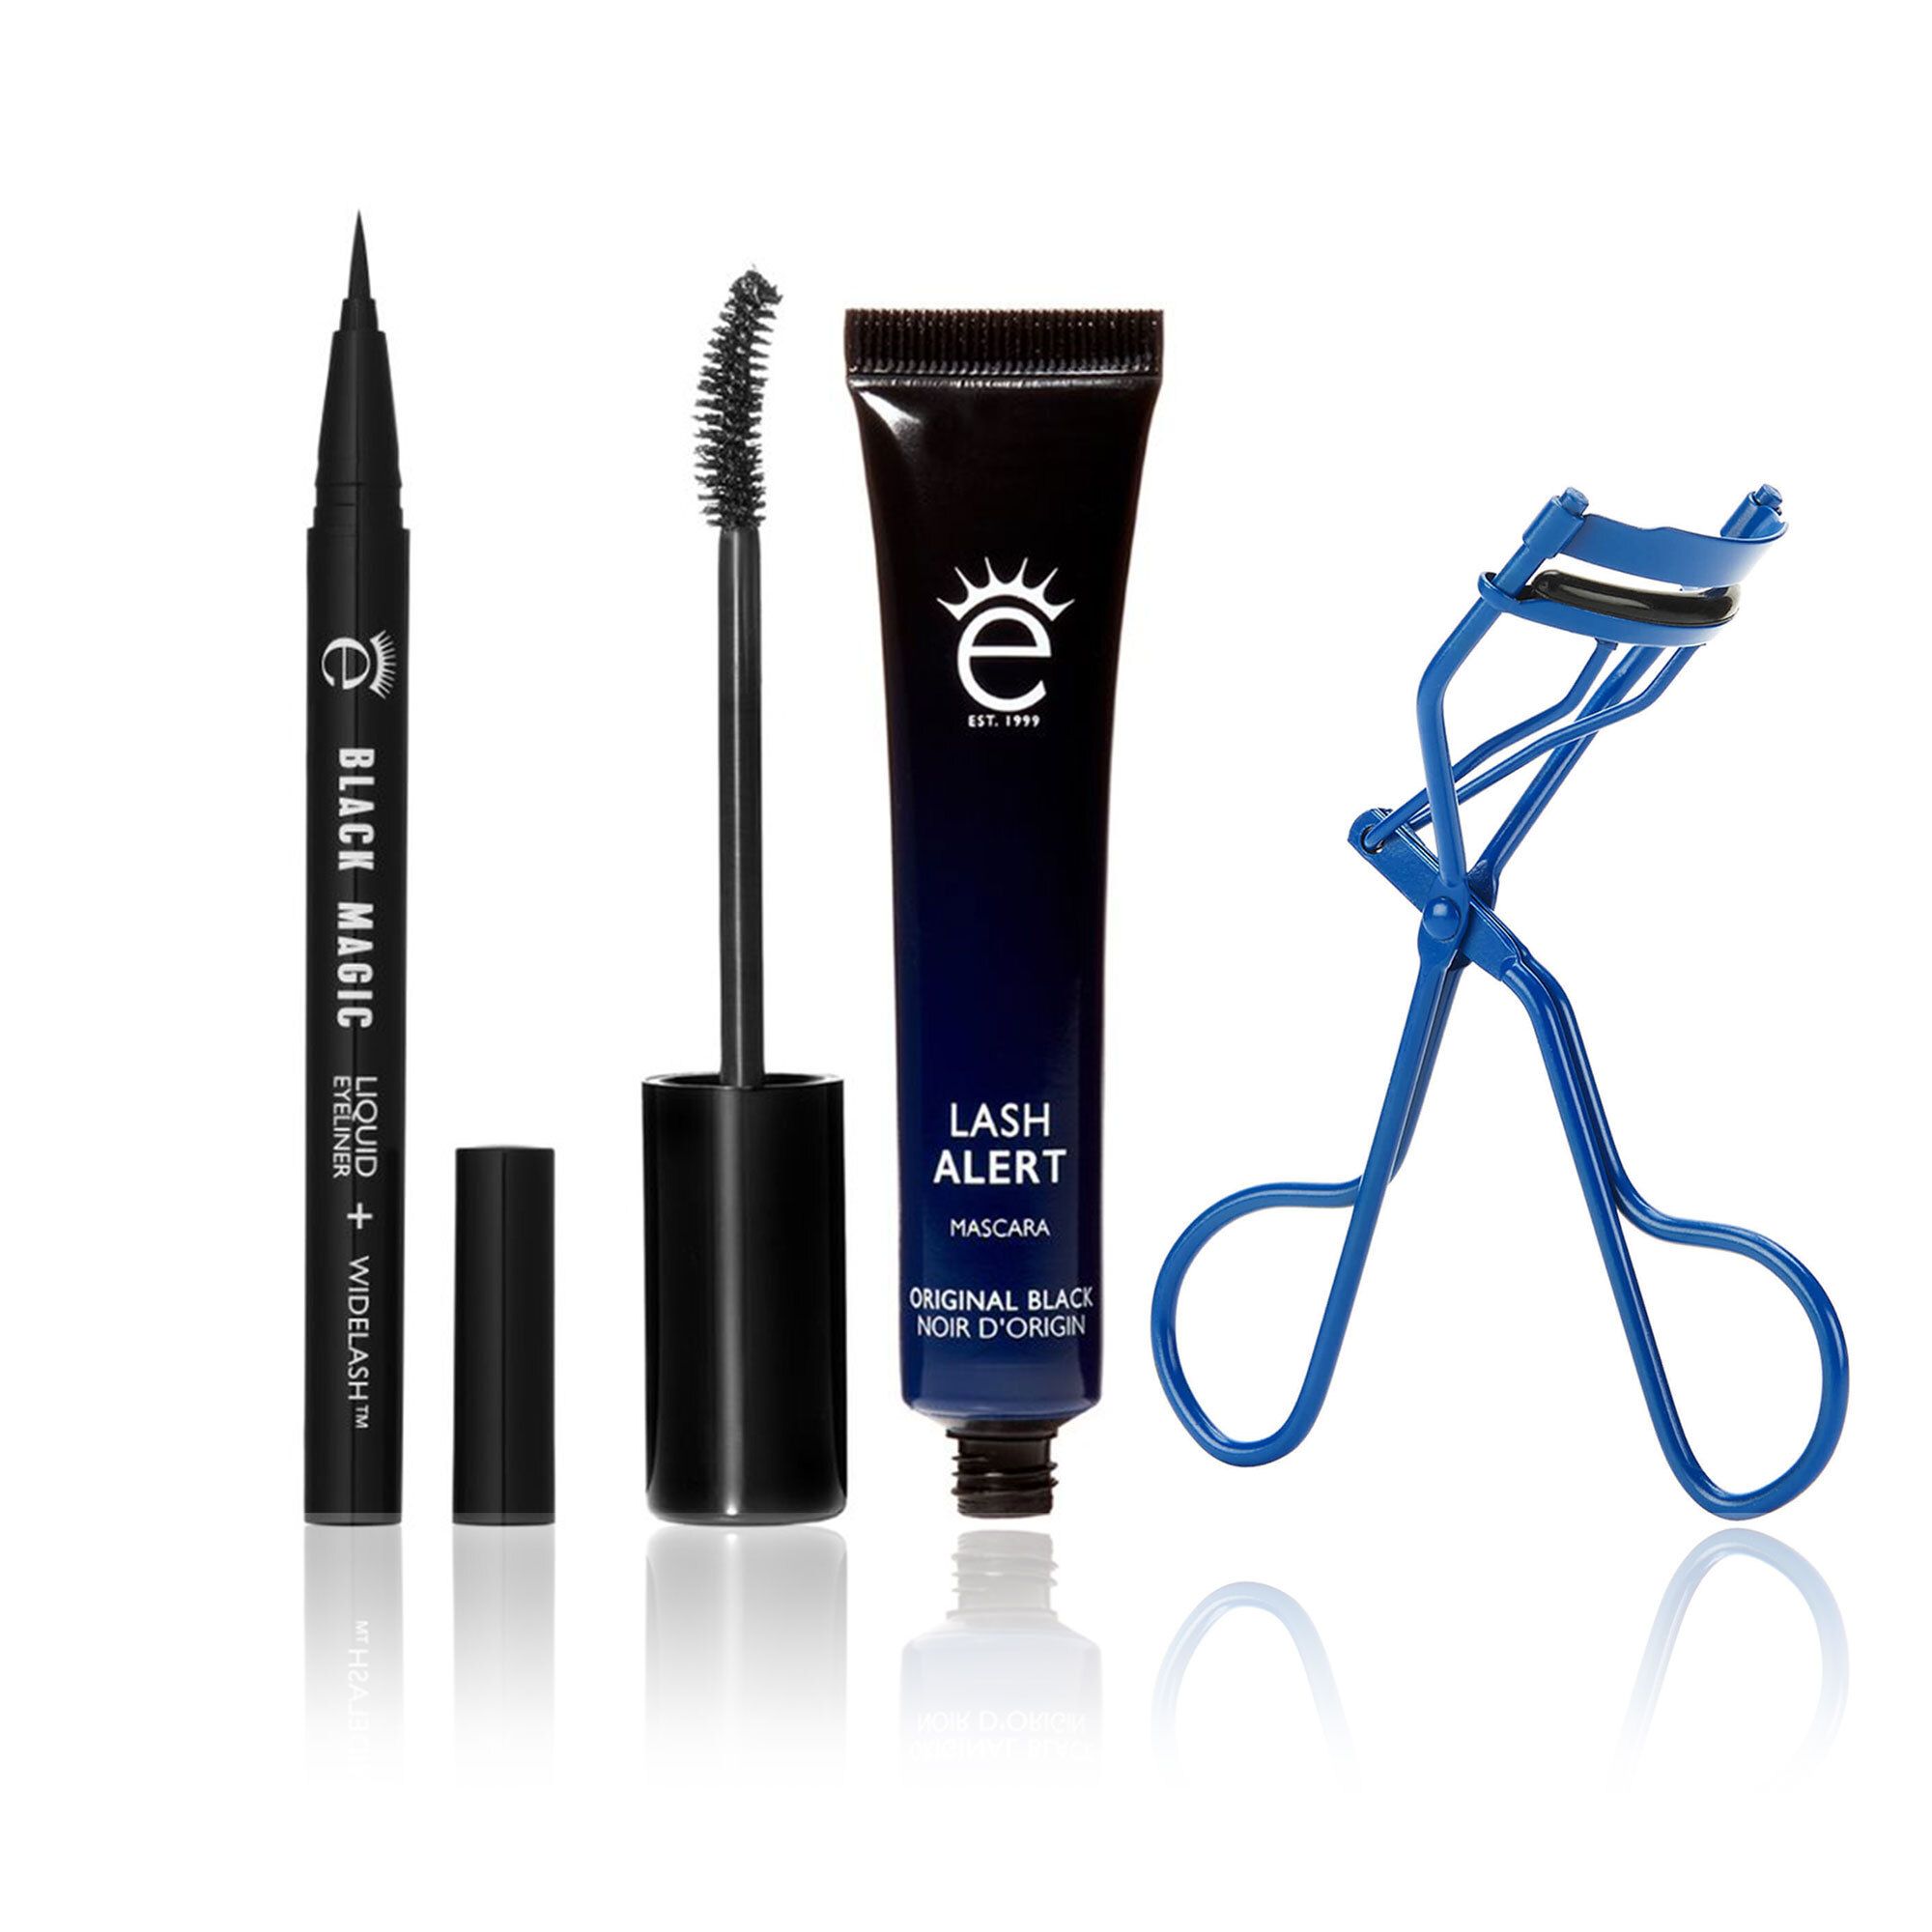 Image of Kit make-up occhi: mascara, eyeliner, piegaciglia